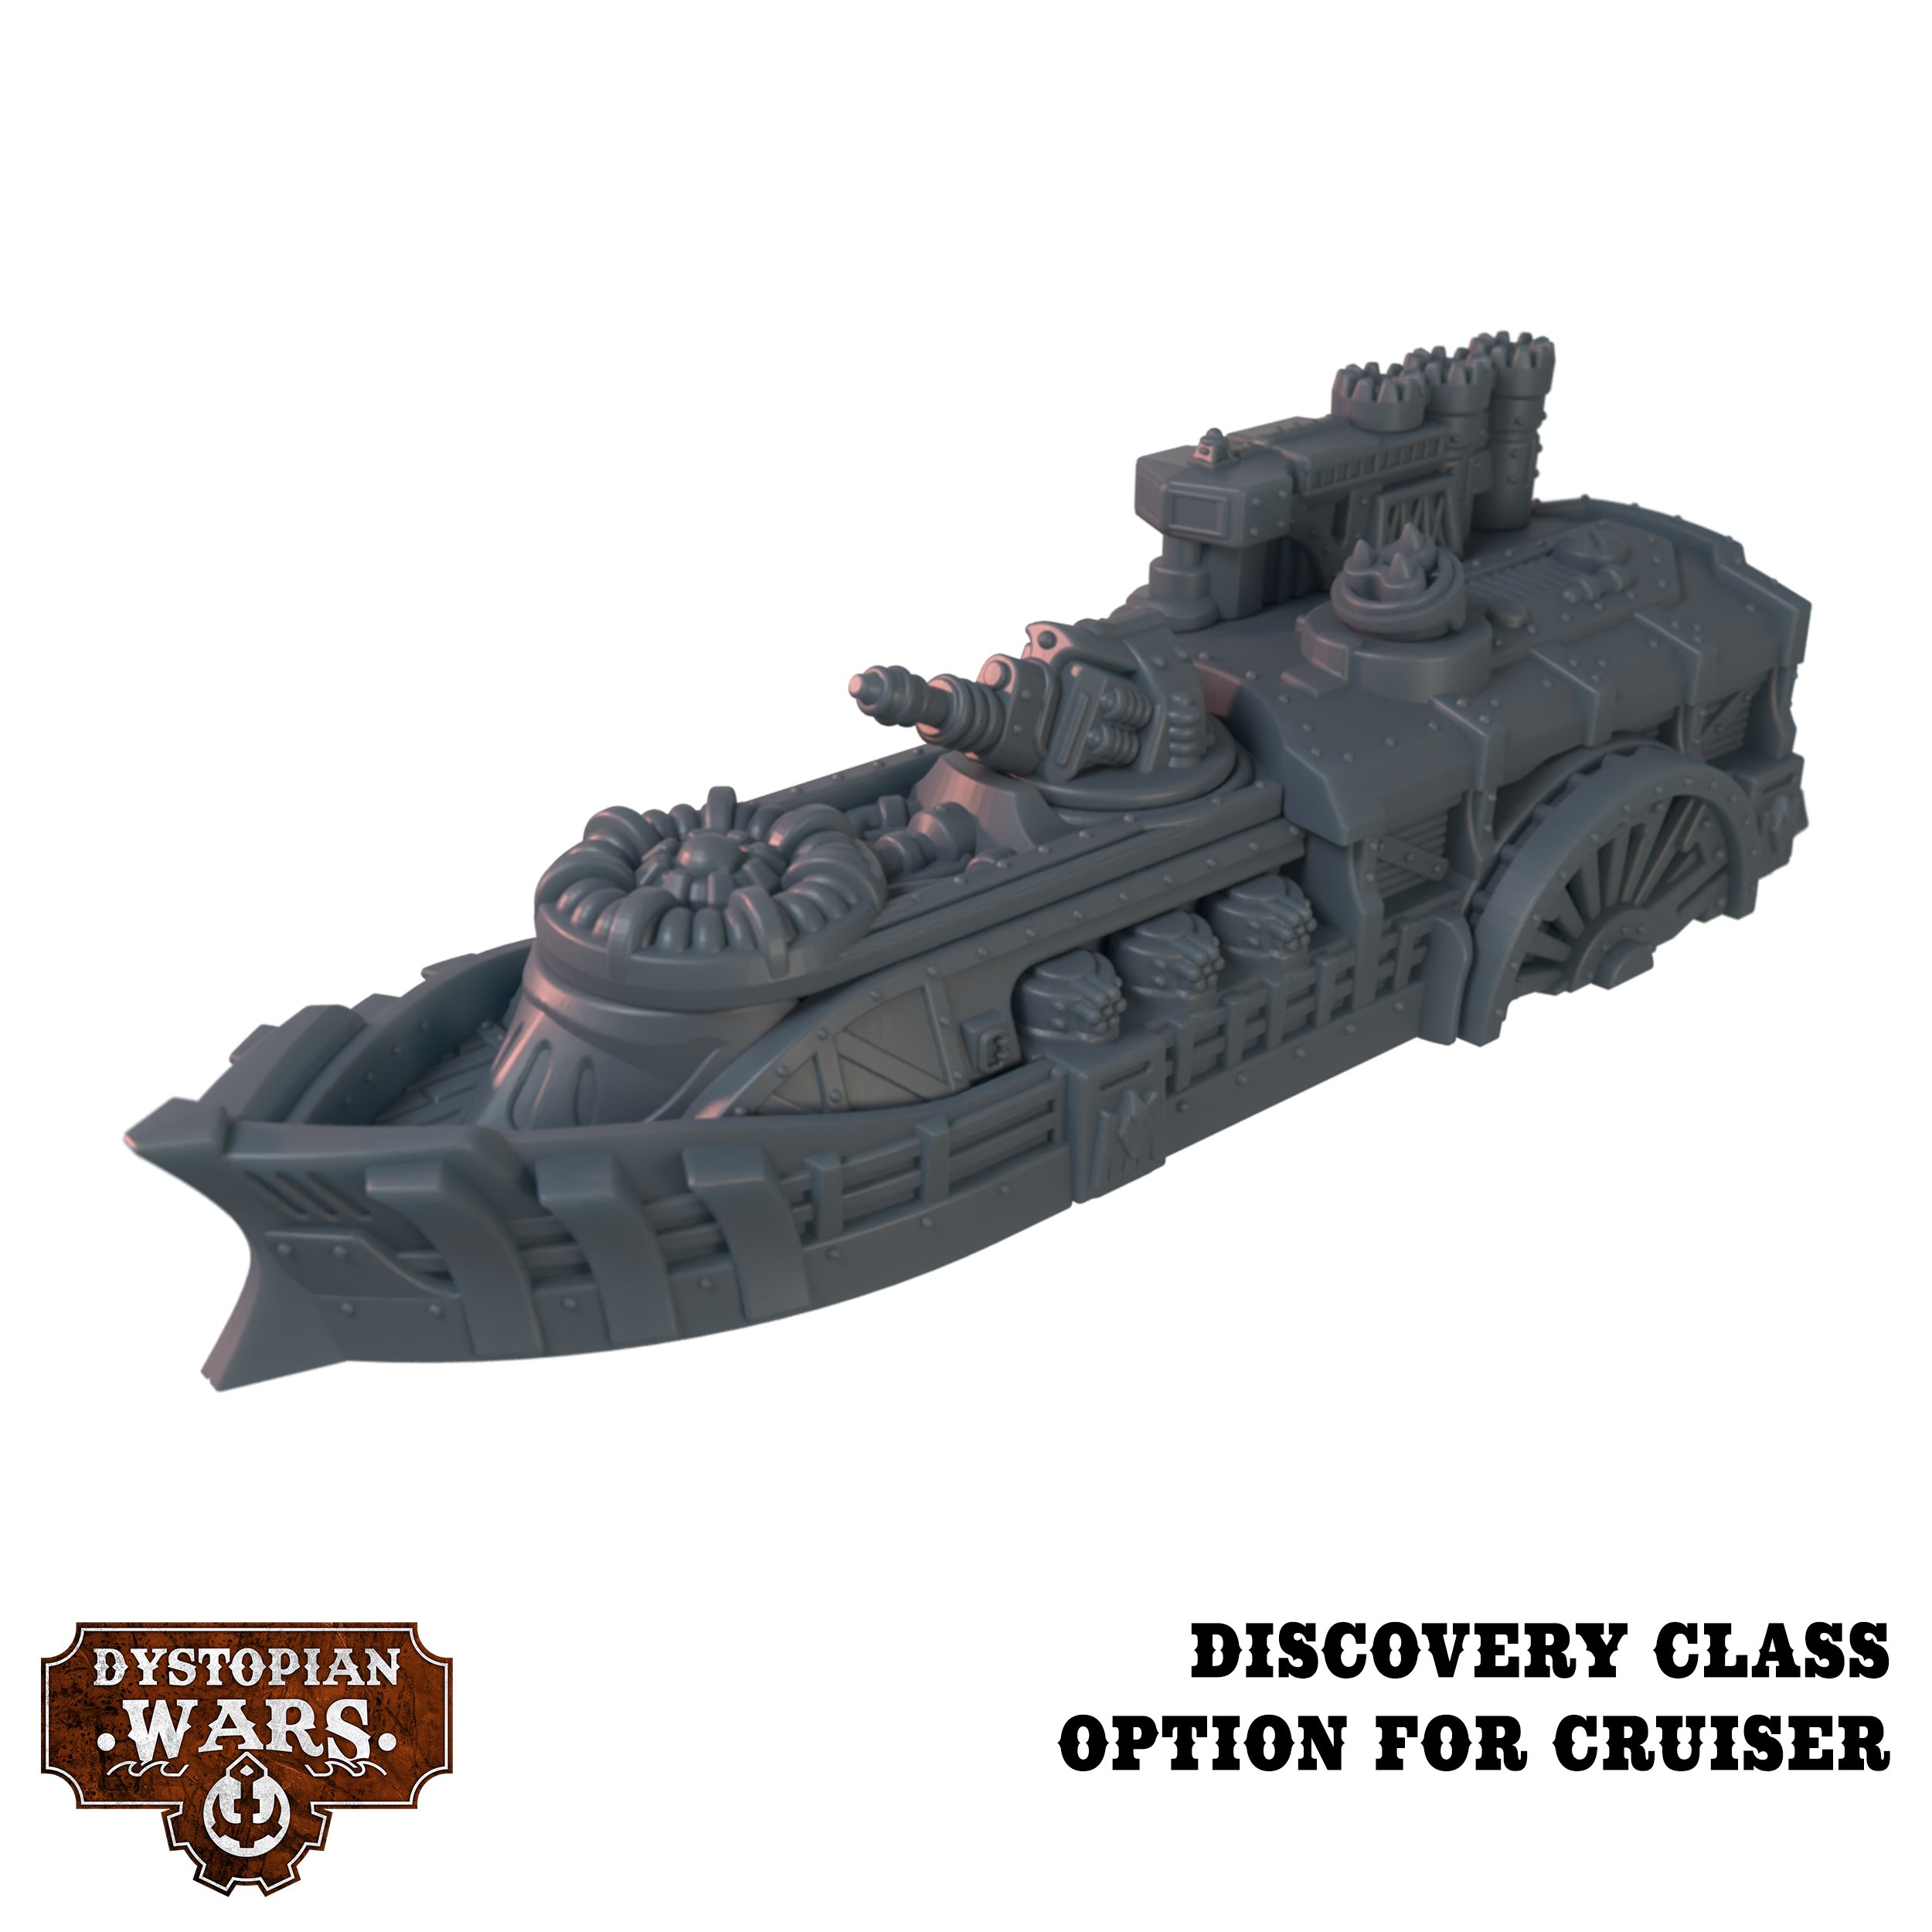 Discovery Class Cruiser - Dystopian Wars